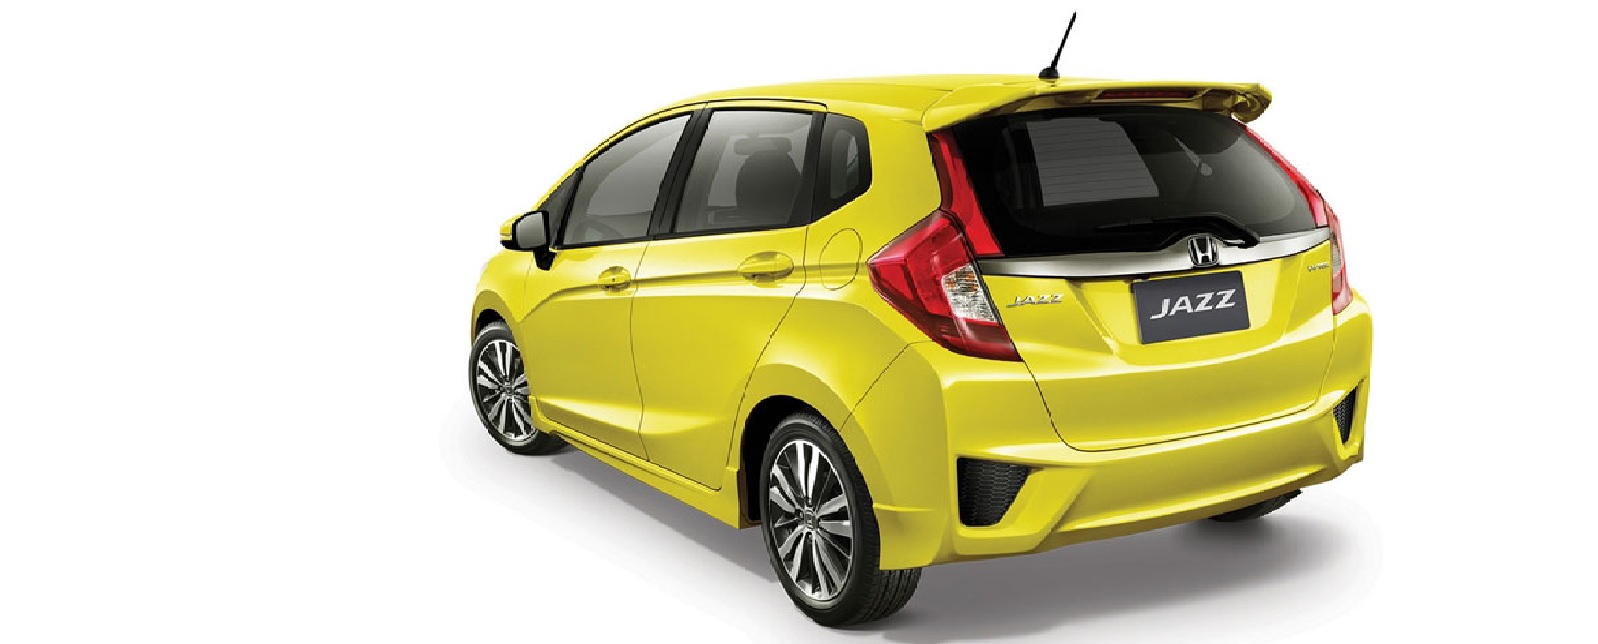 Gambar Mobil  Honda Jazz  Warna Kuning  Modifikasi Mobil 